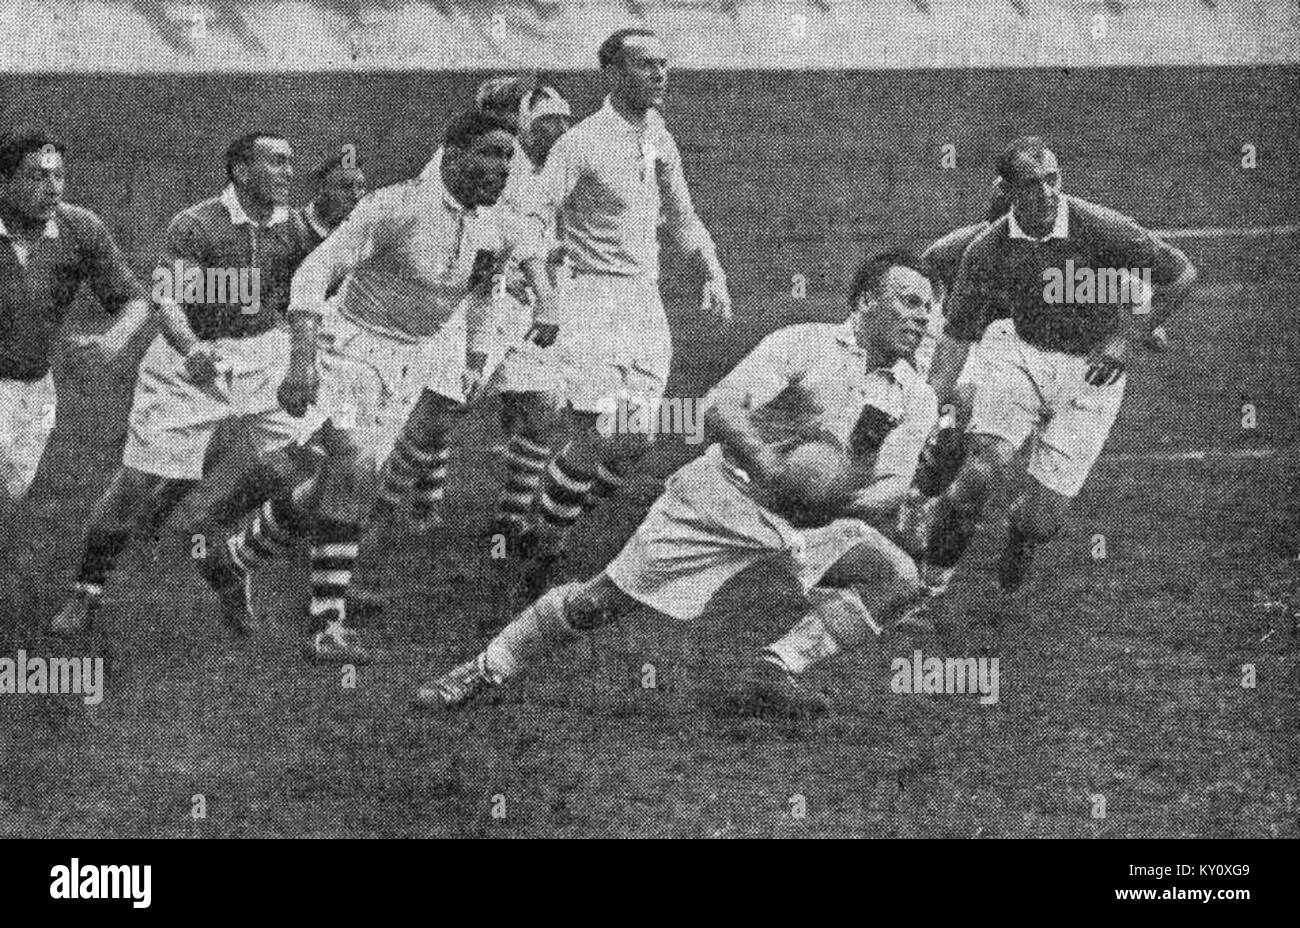 Finale de la Coupe de France de rugby à XV 1937, victoire de Languedoc-Roussillon (foncé) sur Côte basque (en blanc) Stock Photo